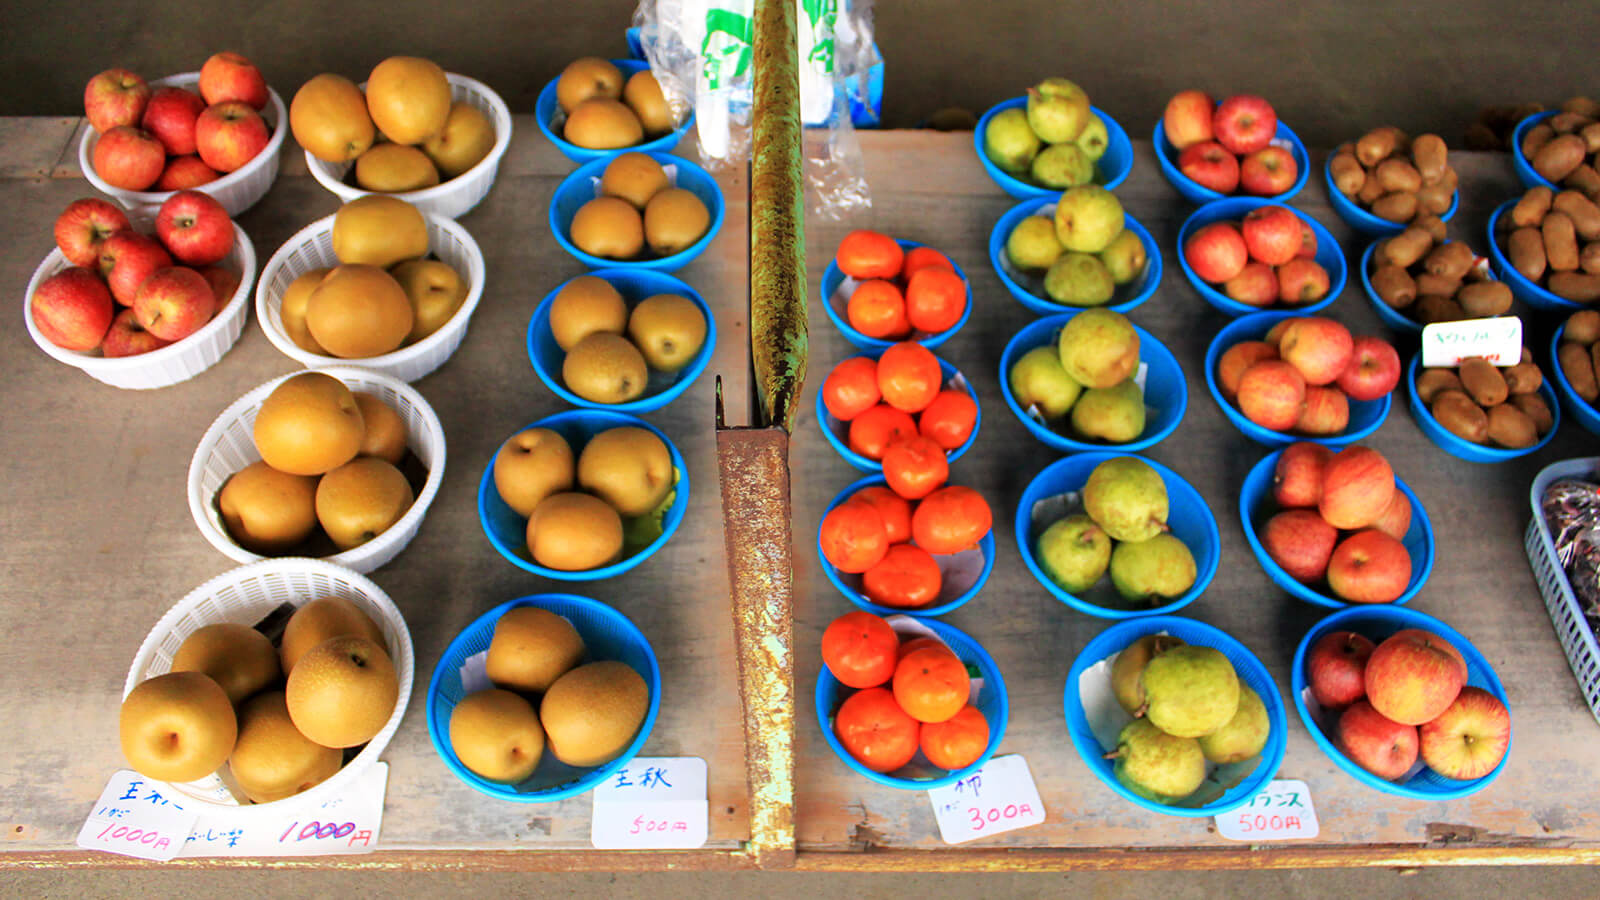 室野井果実園で梨・りんご・桃狩り体験